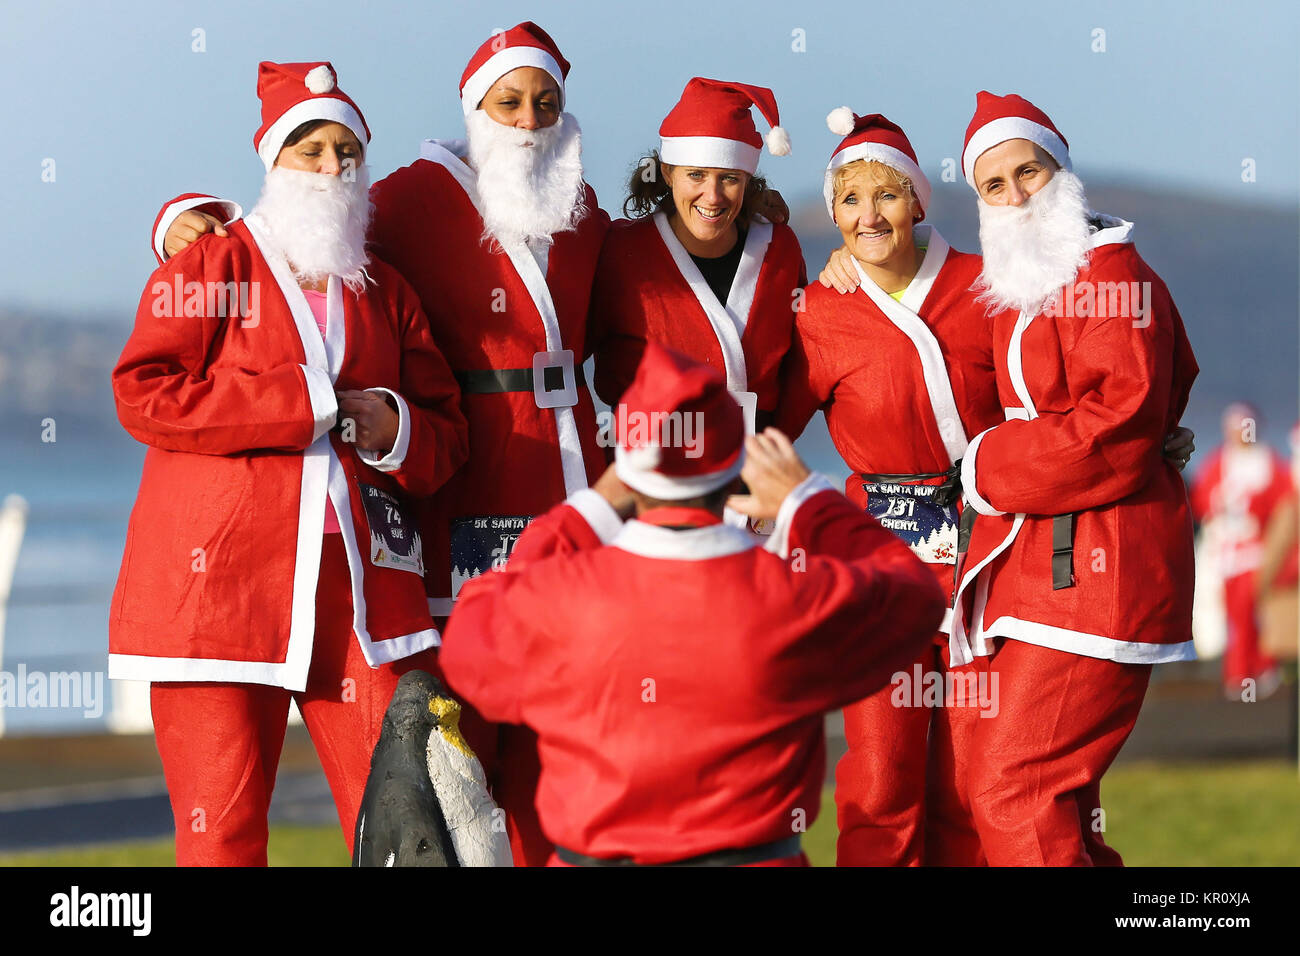 Sur la photo : Ossature au Père Noël fantaisie robe ont leur photo prise cette année de courir à Aberavon, Pays de Galles, Royaume-Uni. Samedi 16 Décembre 2017 Re : 500 personnes Banque D'Images